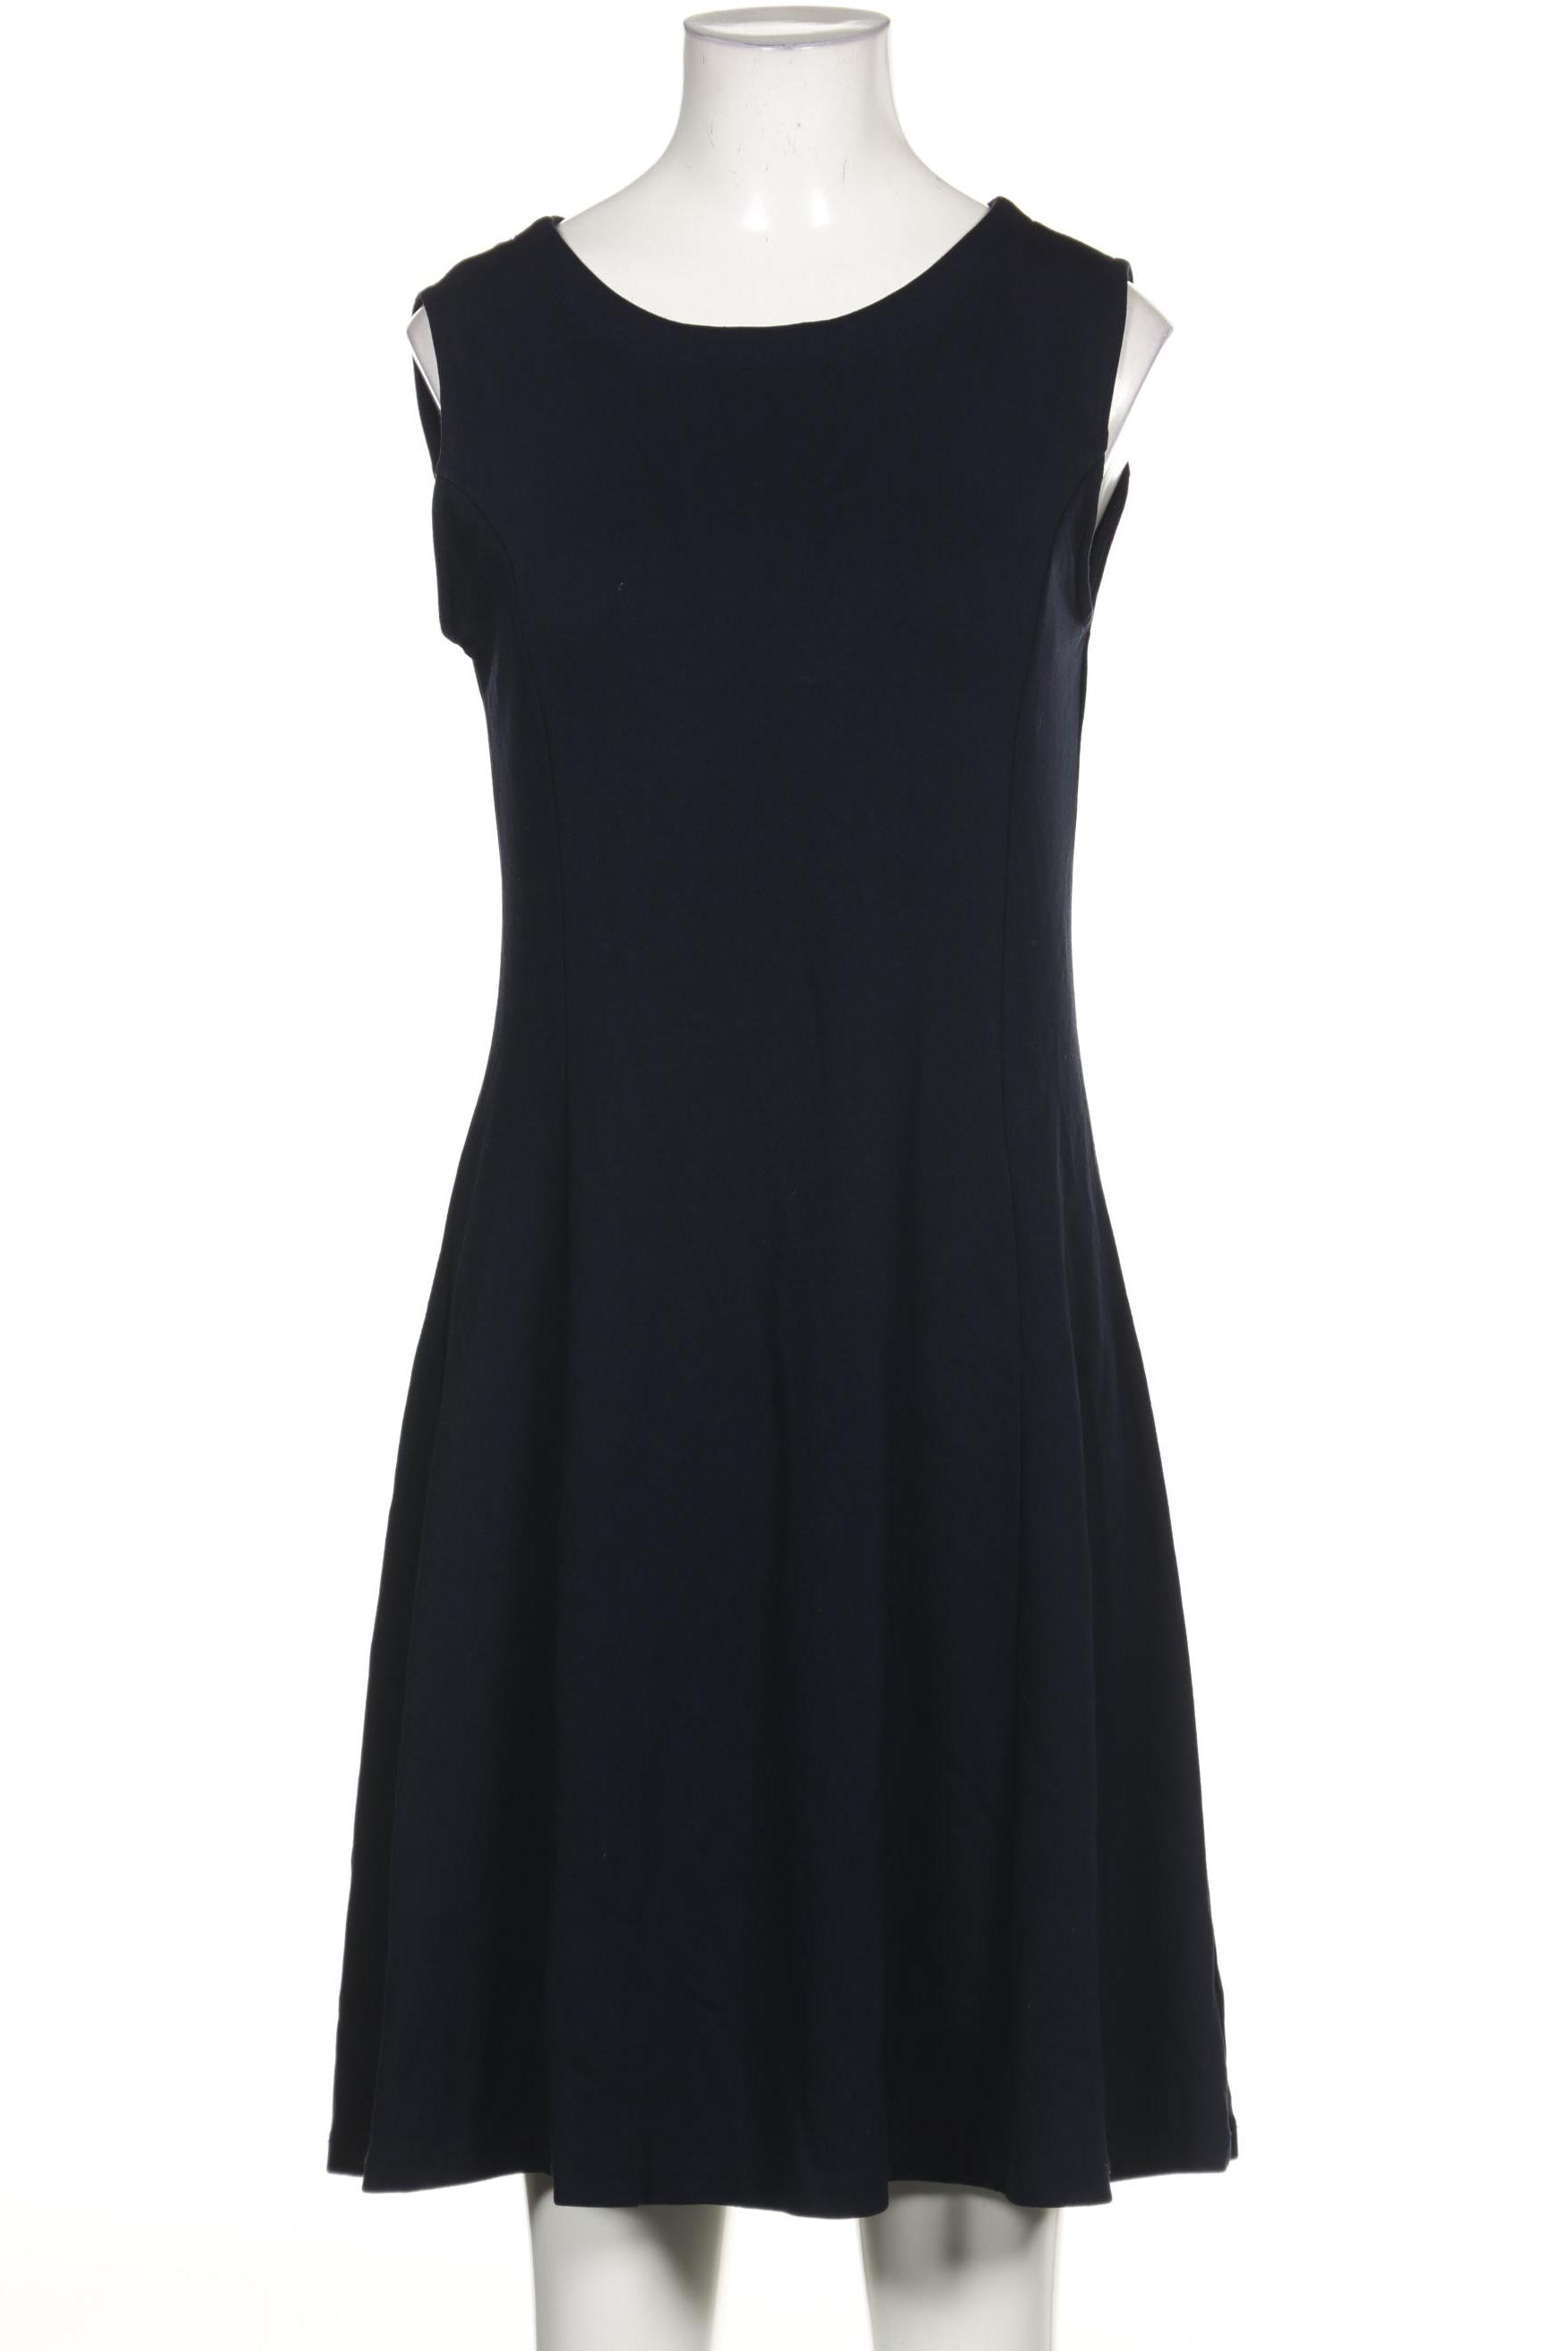 Opus Damen Kleid, marineblau, Gr. 38 von Opus